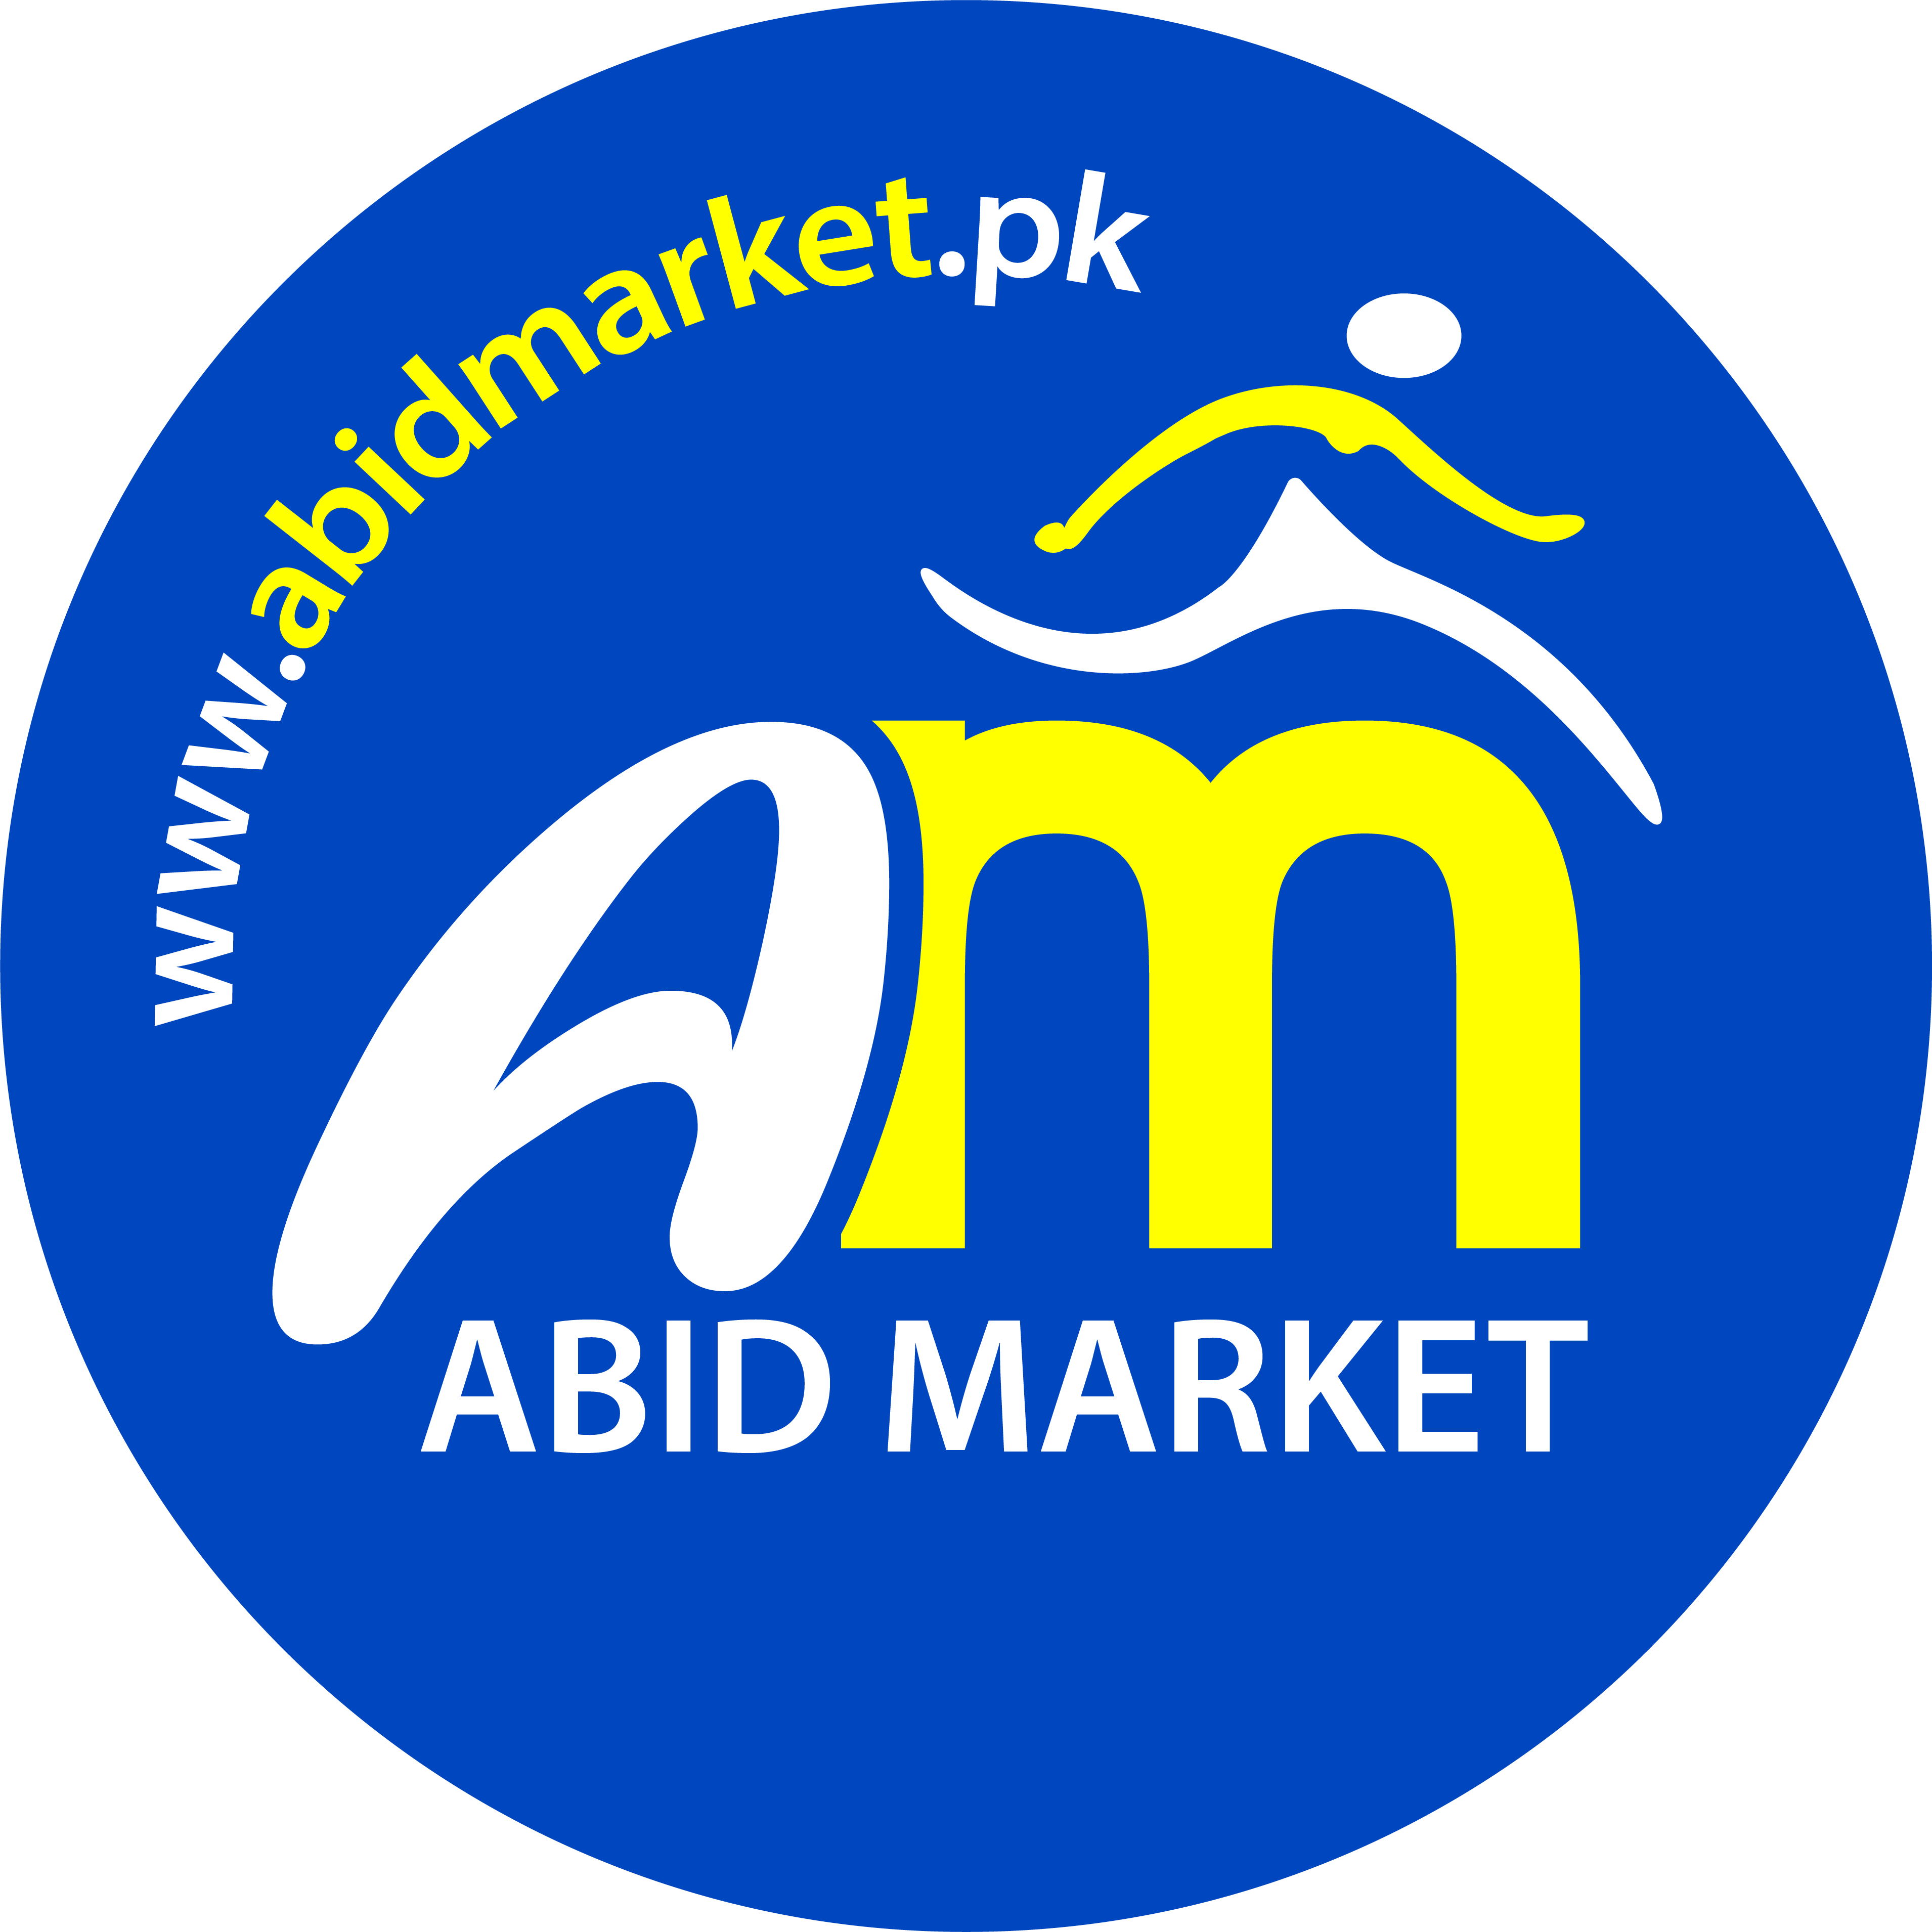 02-Abid-Market-Logo-DL-02-13=01